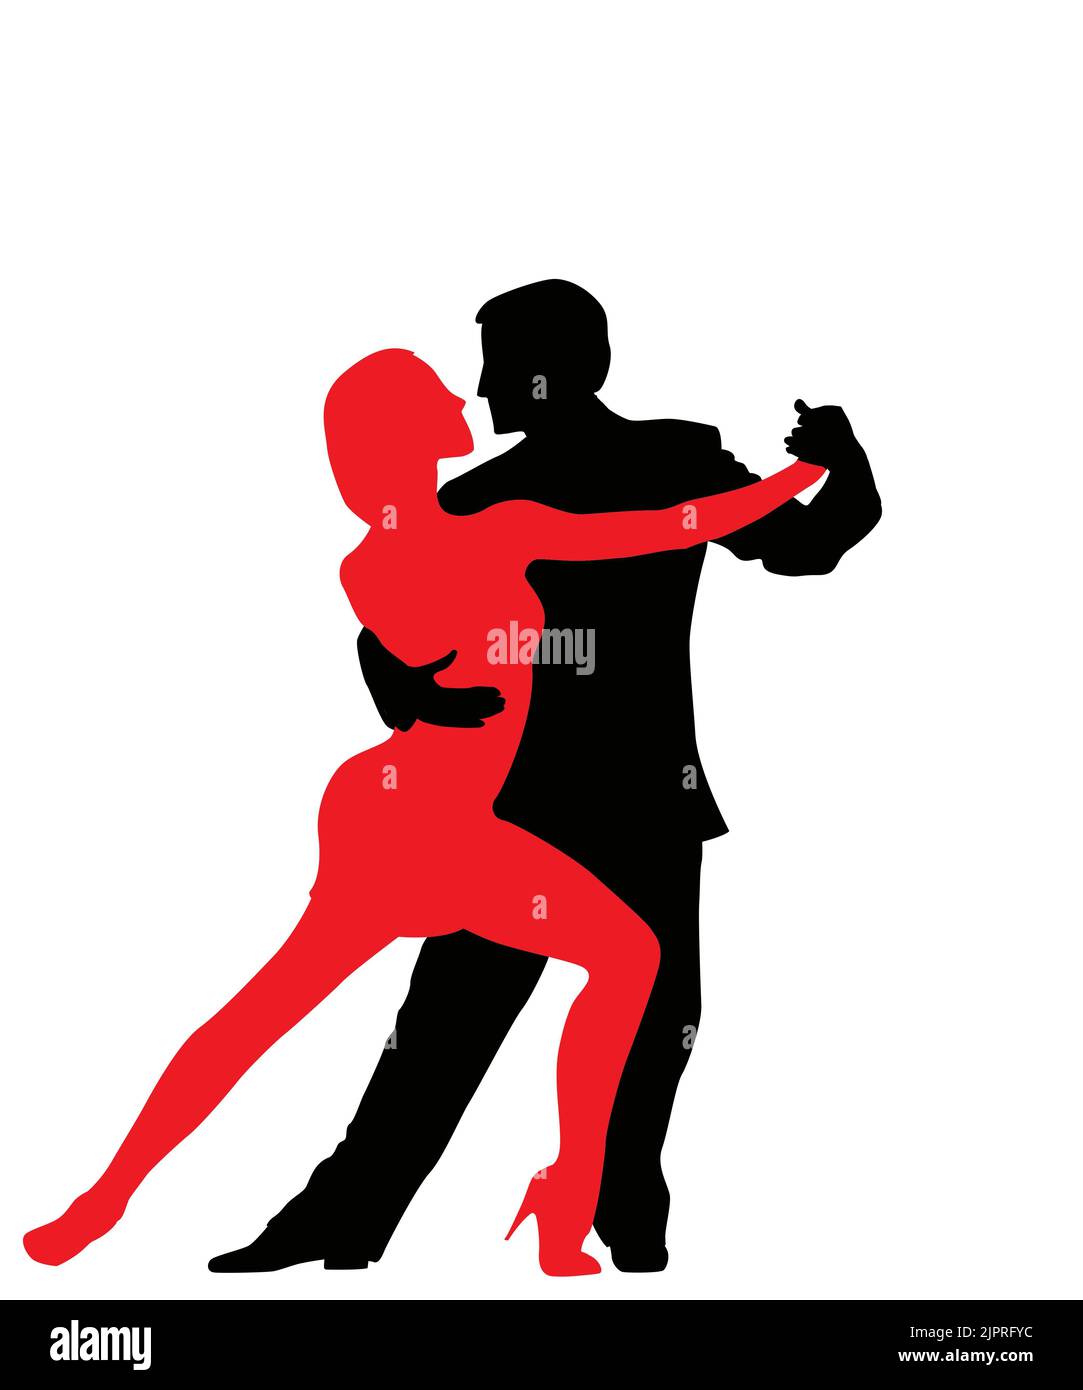 Les danseurs de tango, les silhouettes des objets groupés et isolés sur fond blanc Banque D'Images